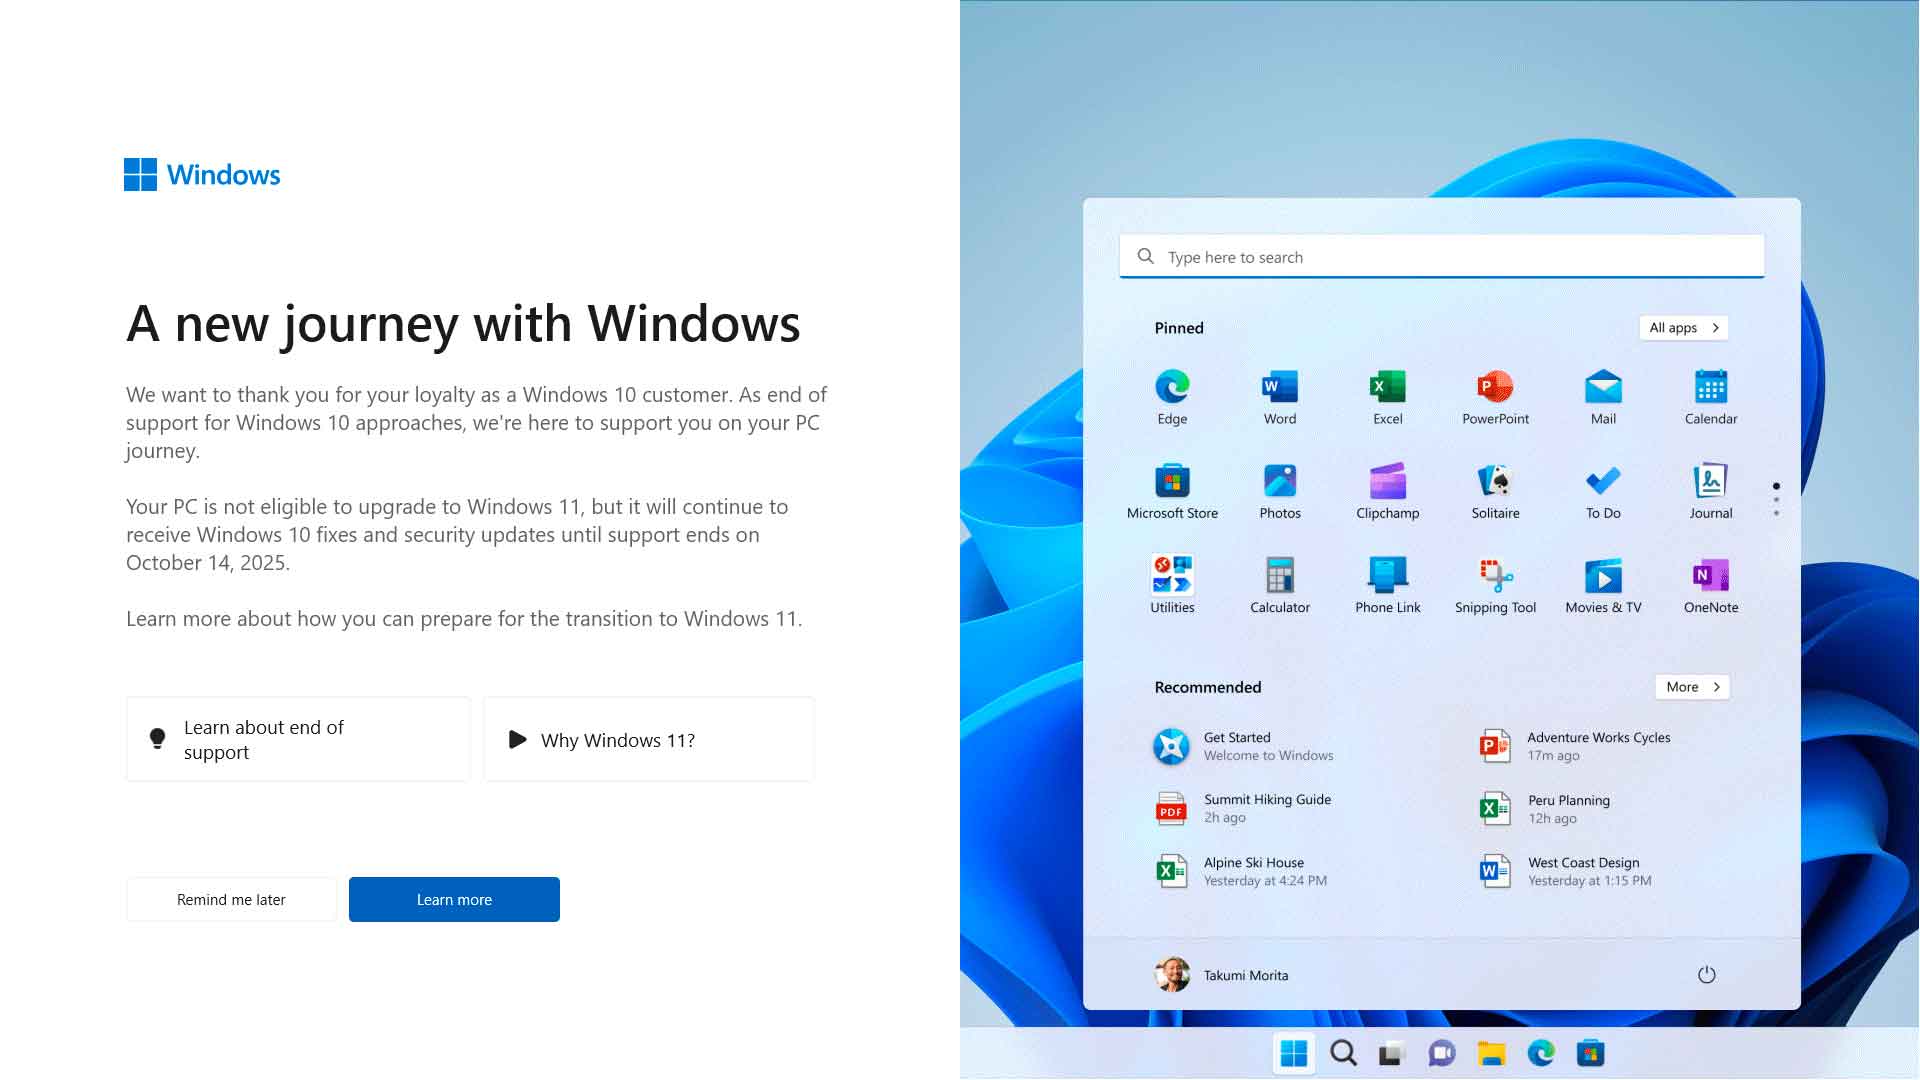 Fin du support du Windows 10, Microsoft lance une nouvelle campagne de sensibilisation (et de publicité ?)